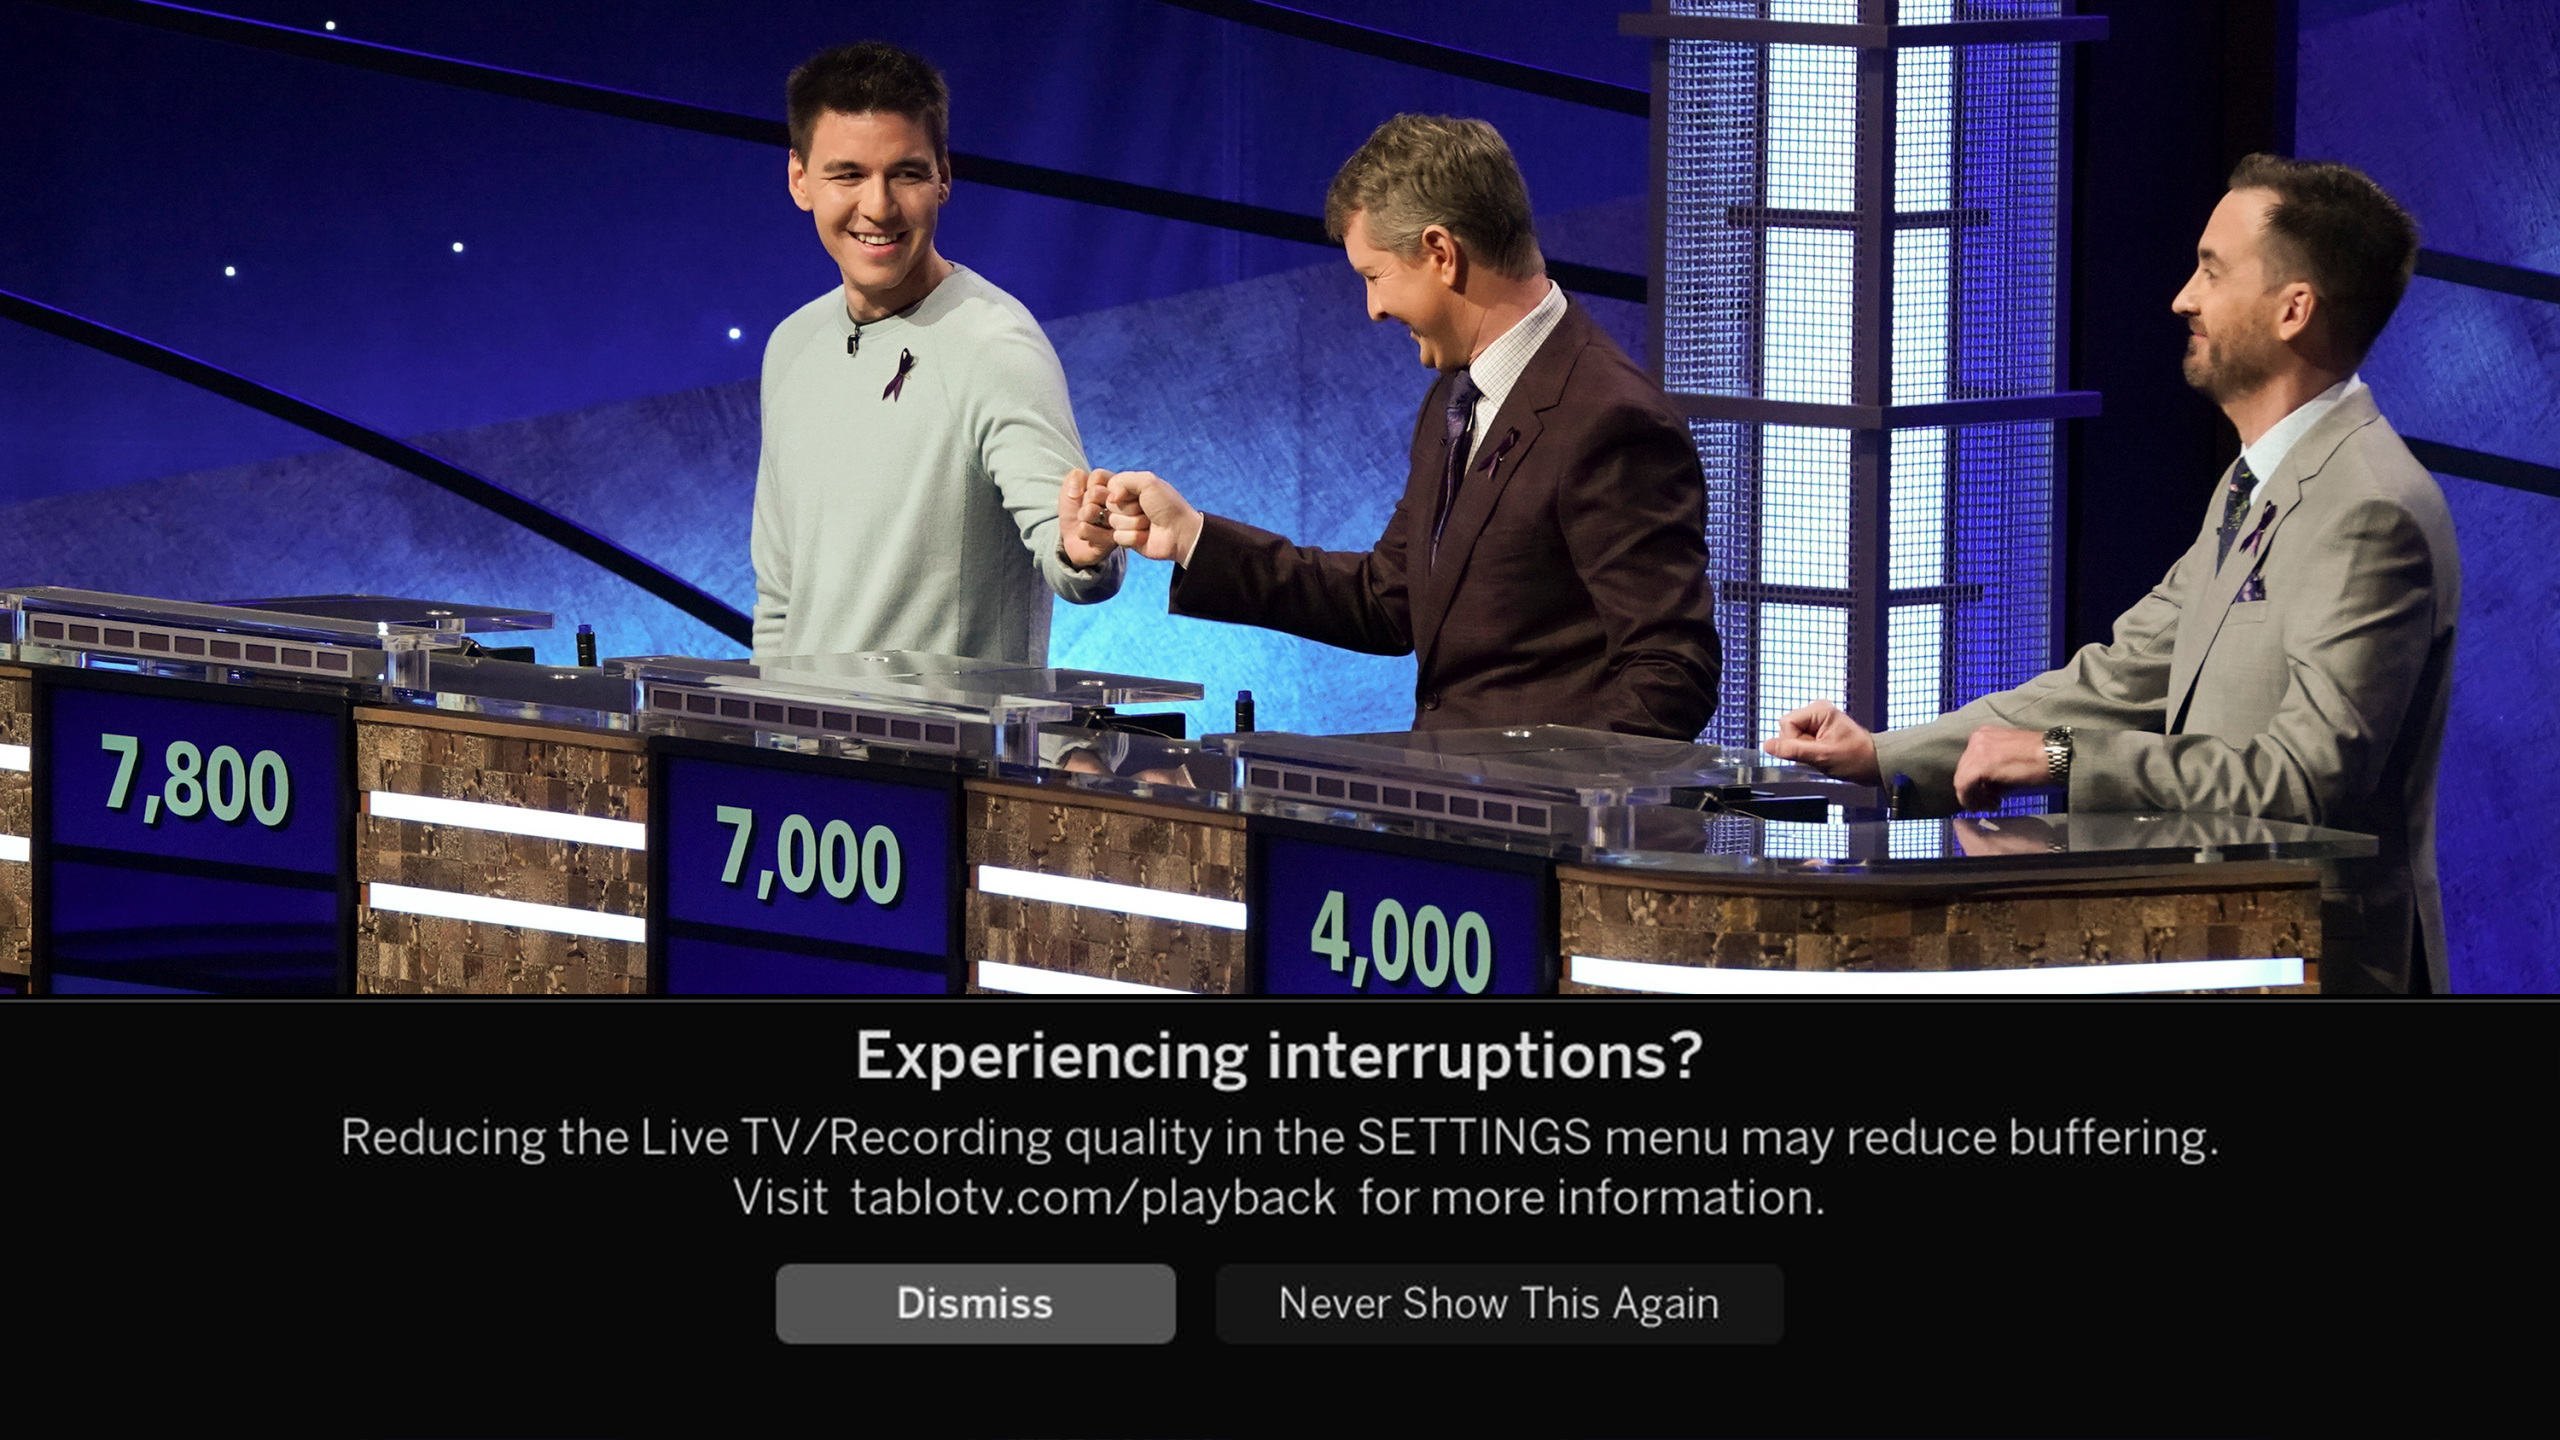 tablo_roku_buffering_error_message_dismiss_jeopardy.png